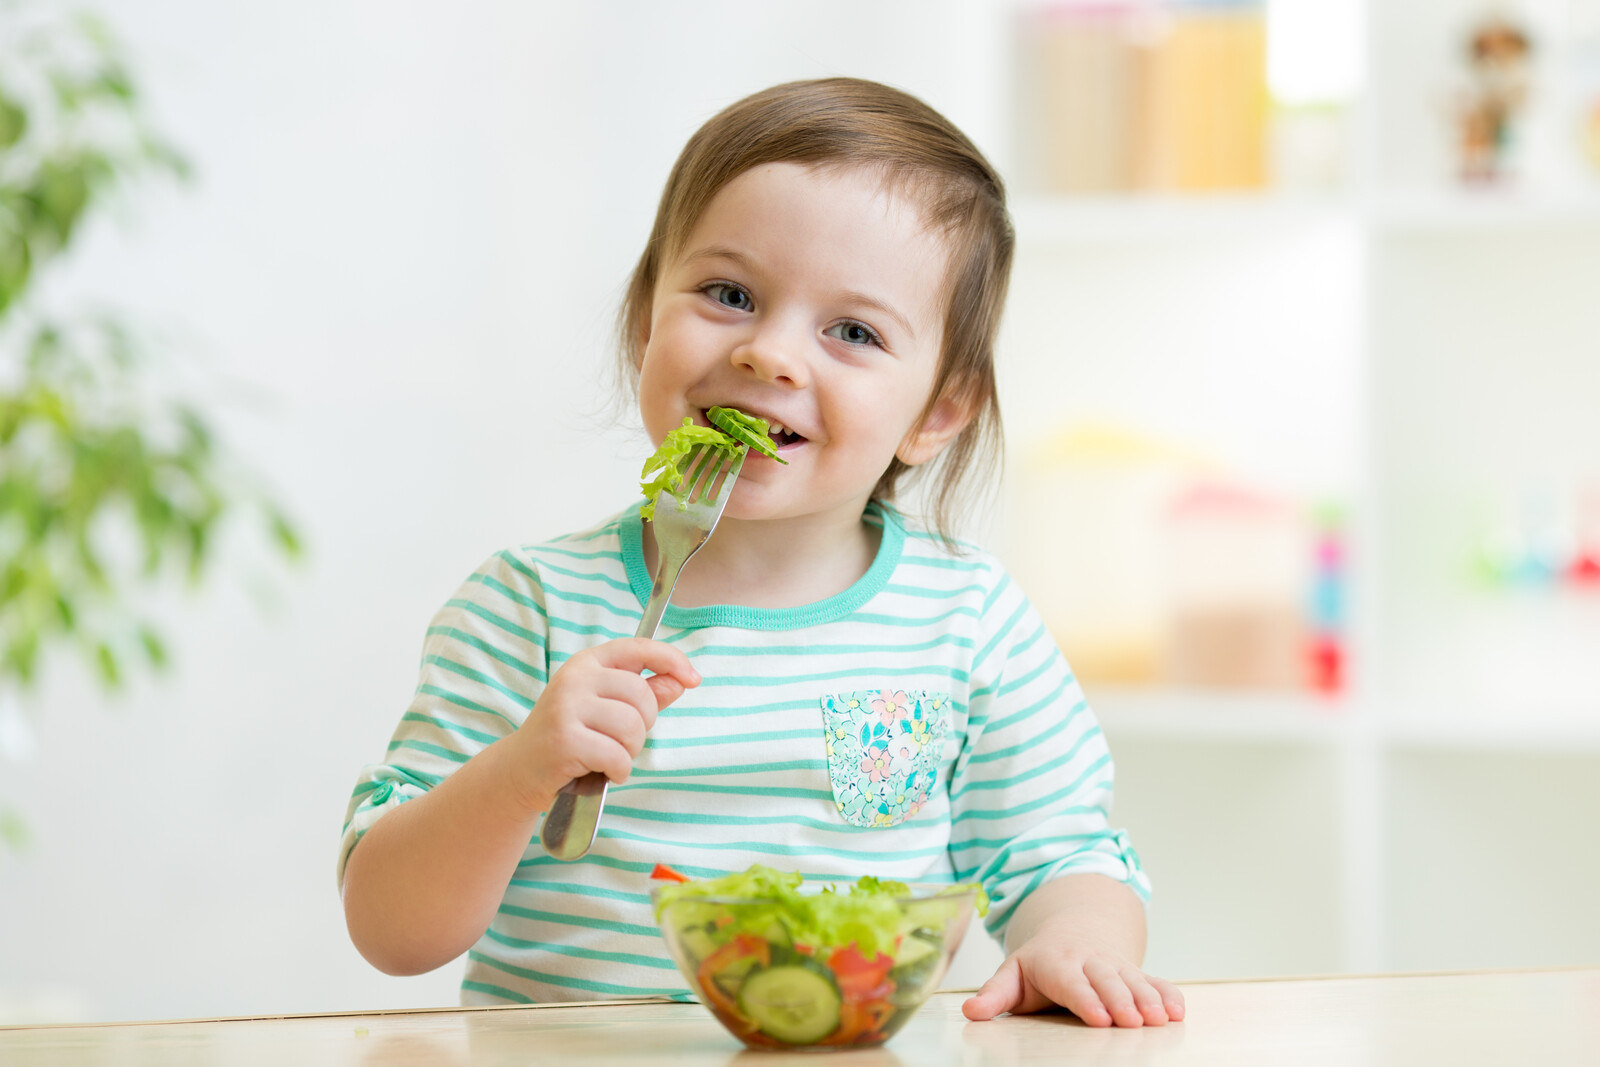 Have you been eating well. Еда для дошкольников. Ребенок ест. Здоровое питание для детей дошкольного возраста. Диетотерапия у детей.